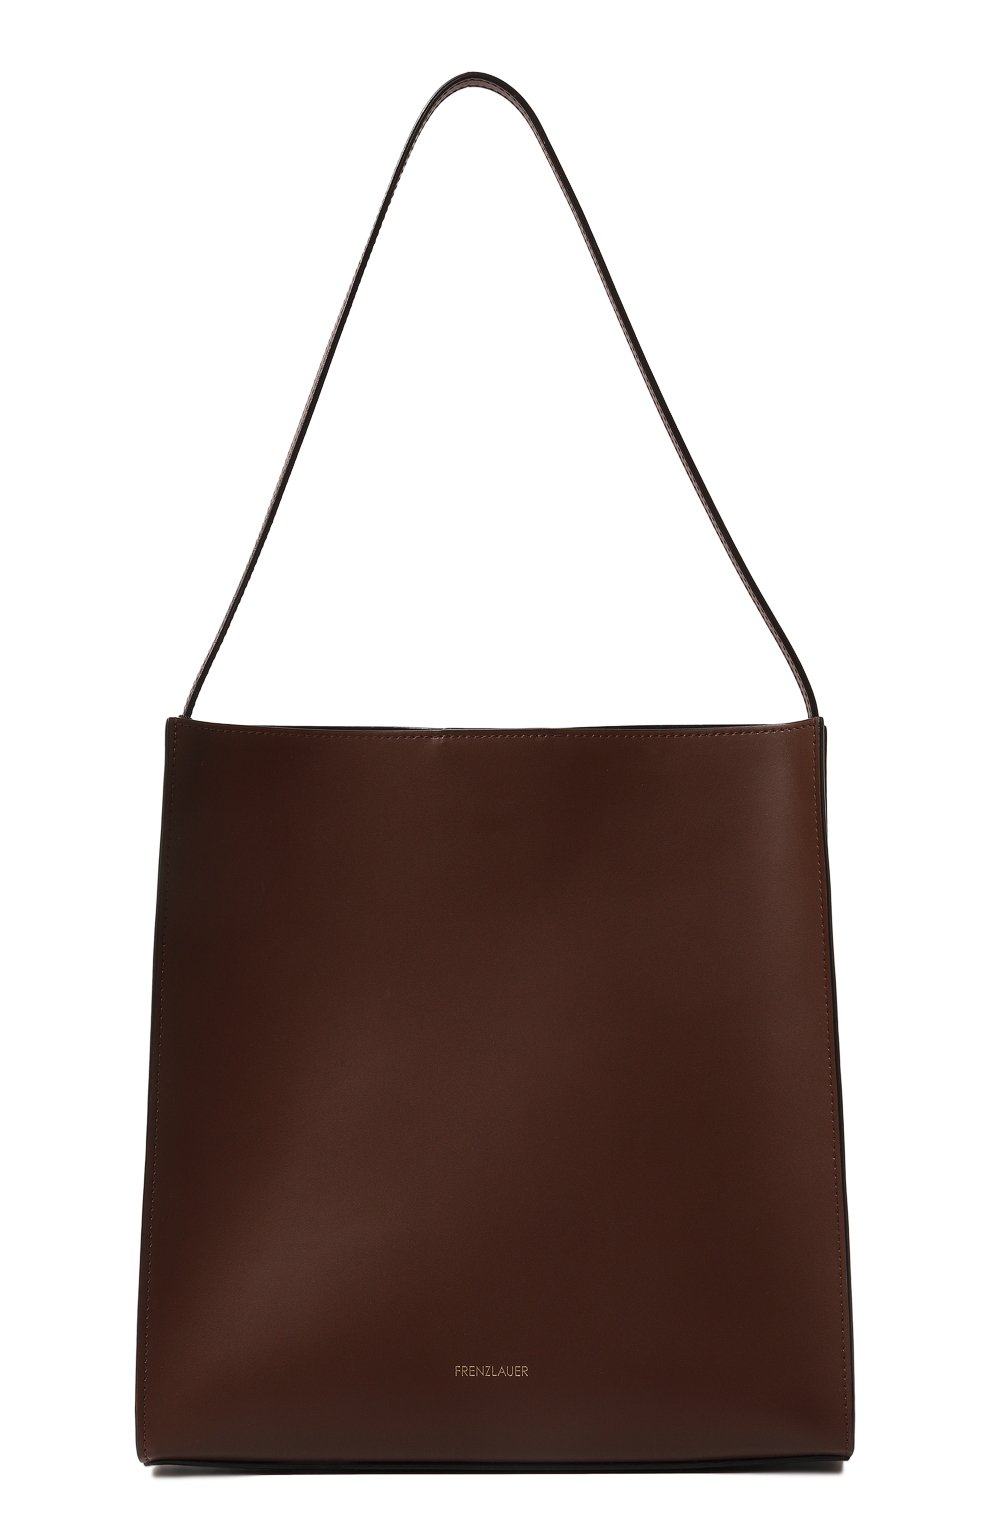 Женский сумка square FRENZLAUER коричневого цвета, арт. SQUARE | Фото 1 (Сумки-технические: Сумки-шопперы; Размер: medium; Материал: Натуральная кожа)